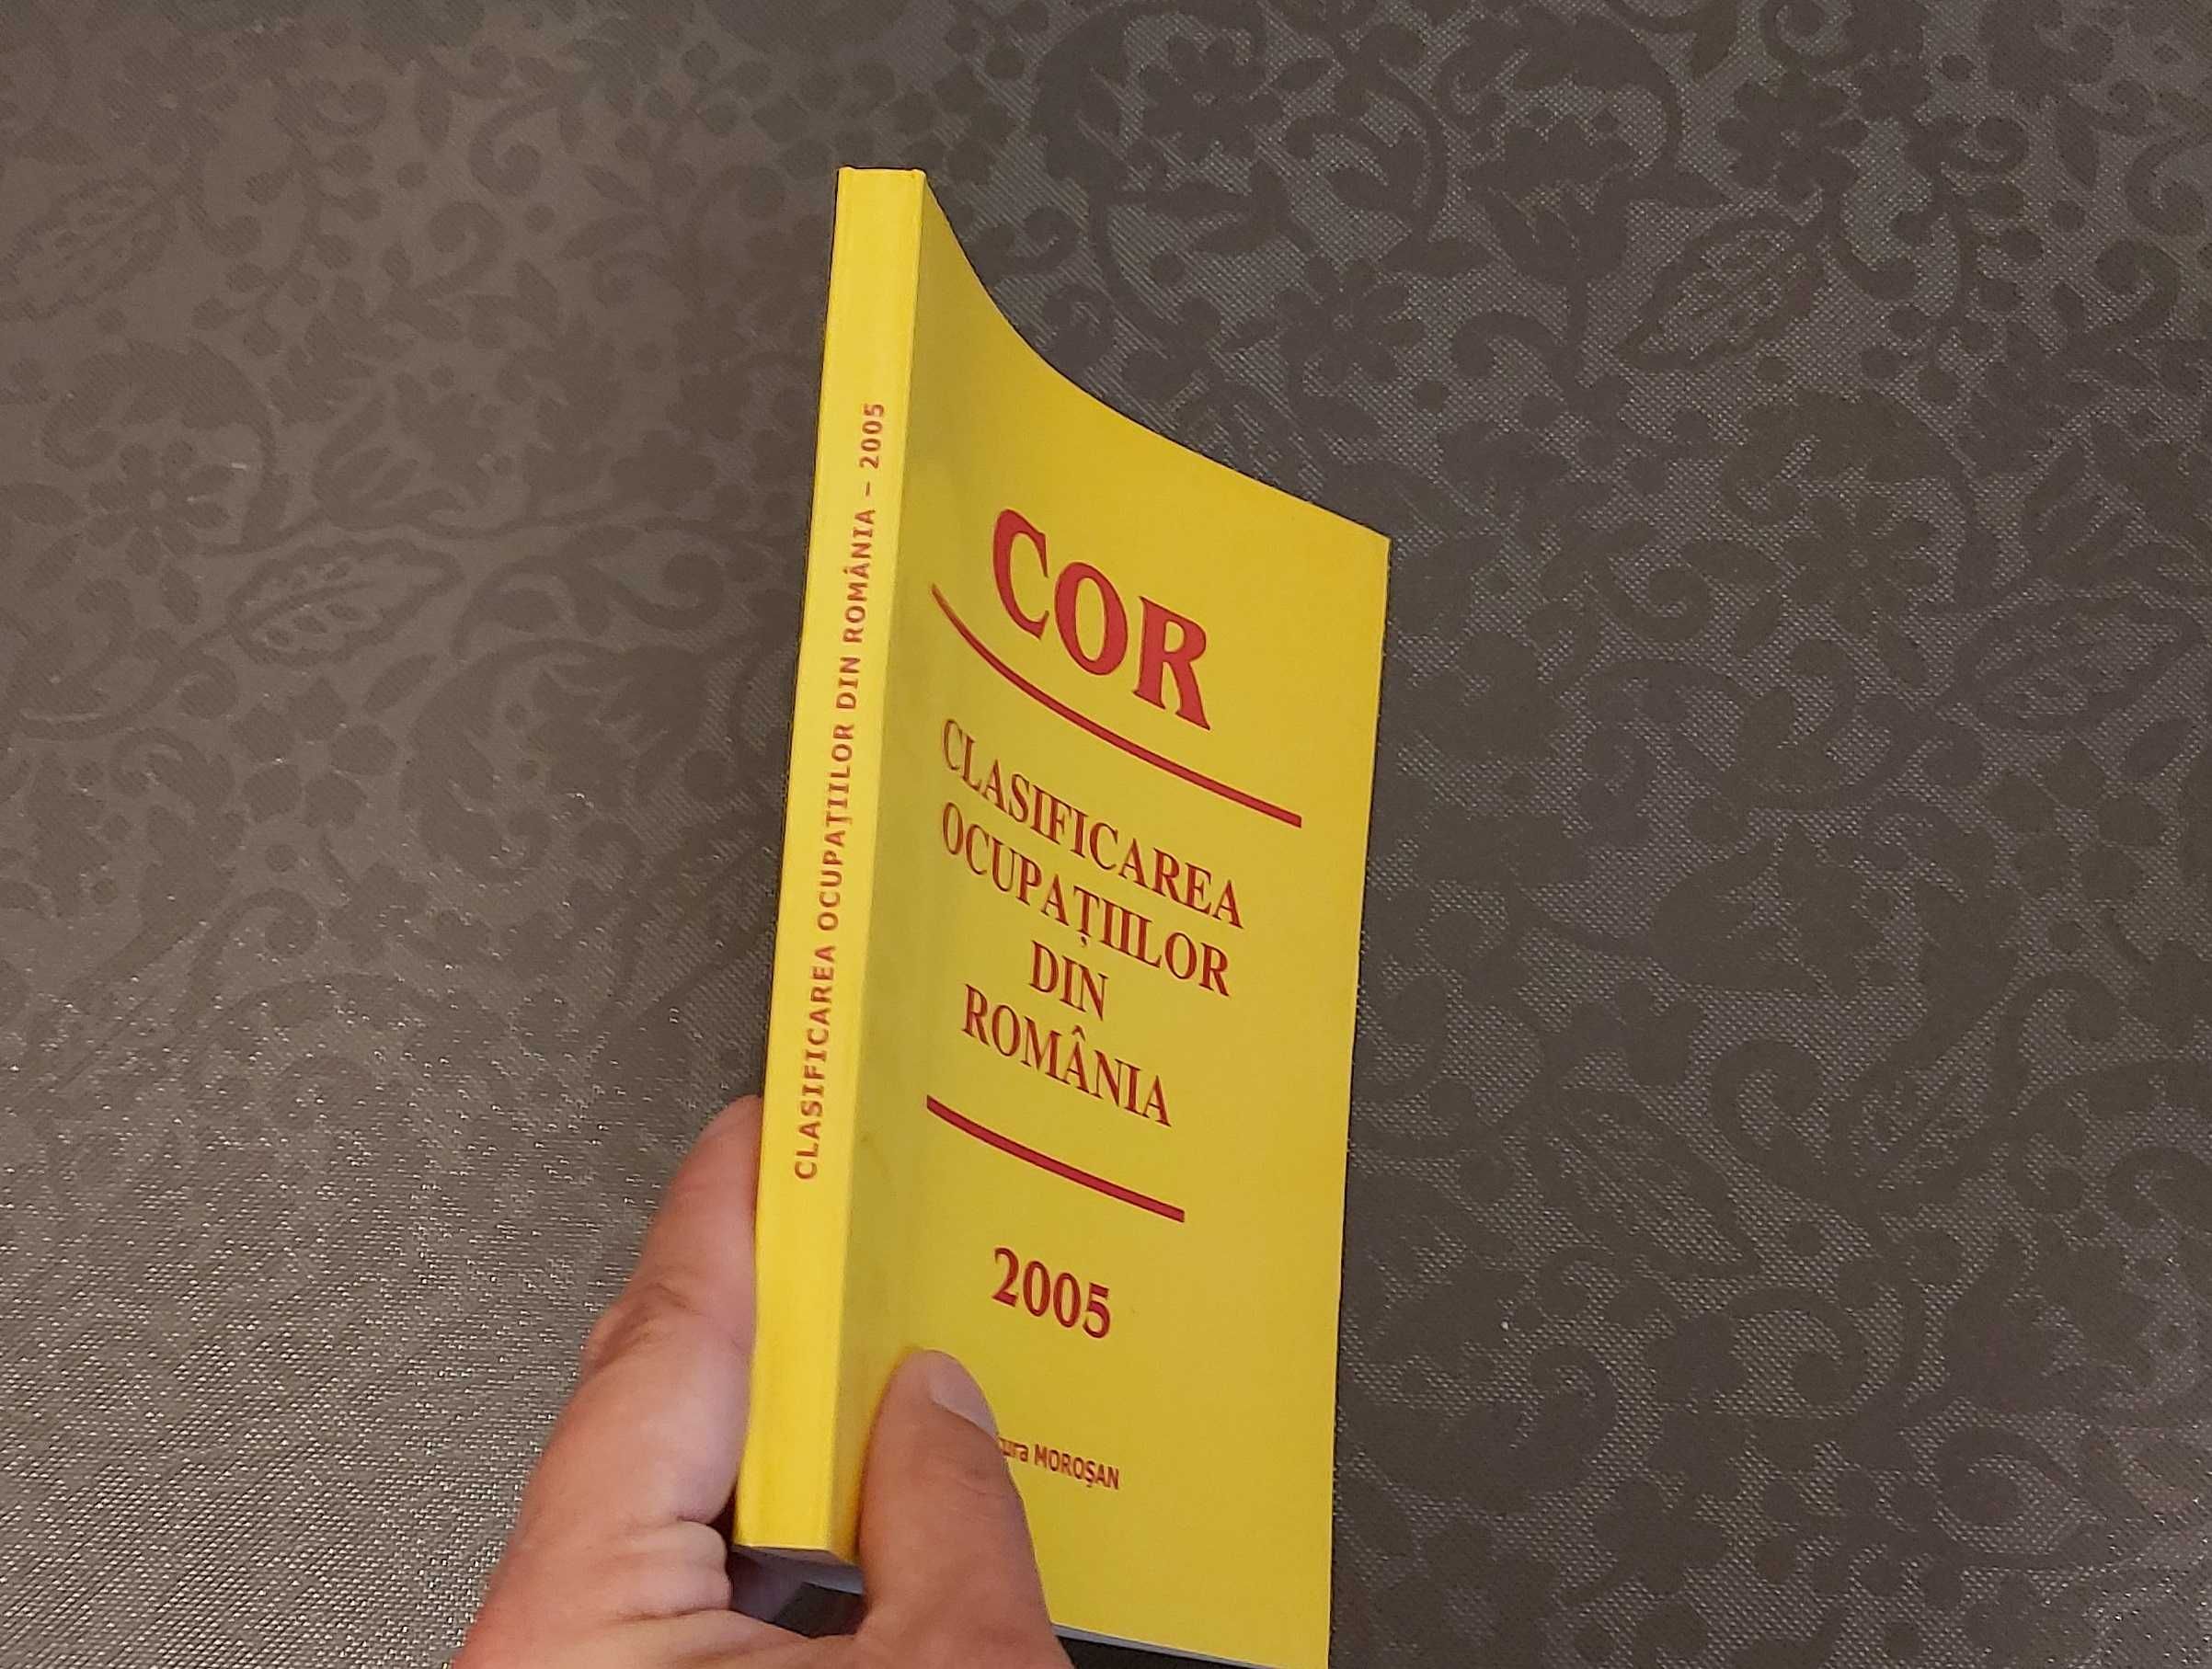 COR - Clasificarea Ocupatiilor din Romania (carte)